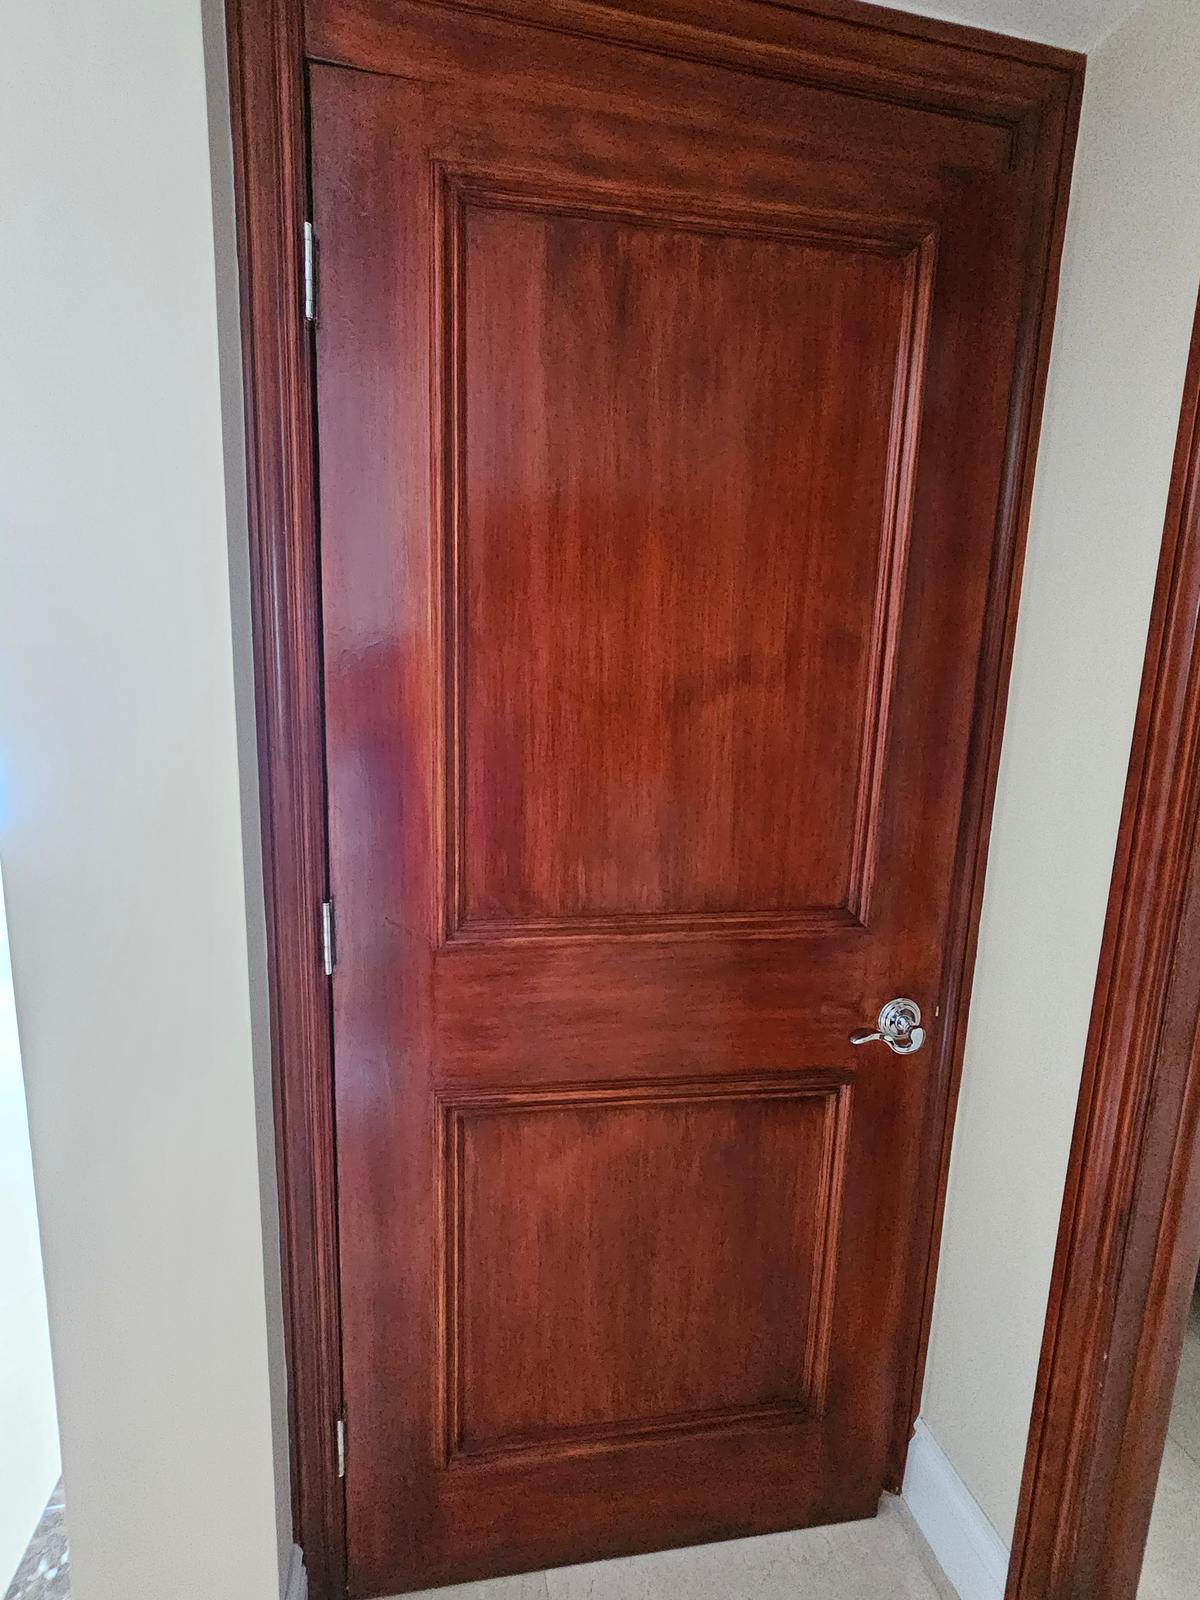 34" x 83" Interior Wood Door with Hardware